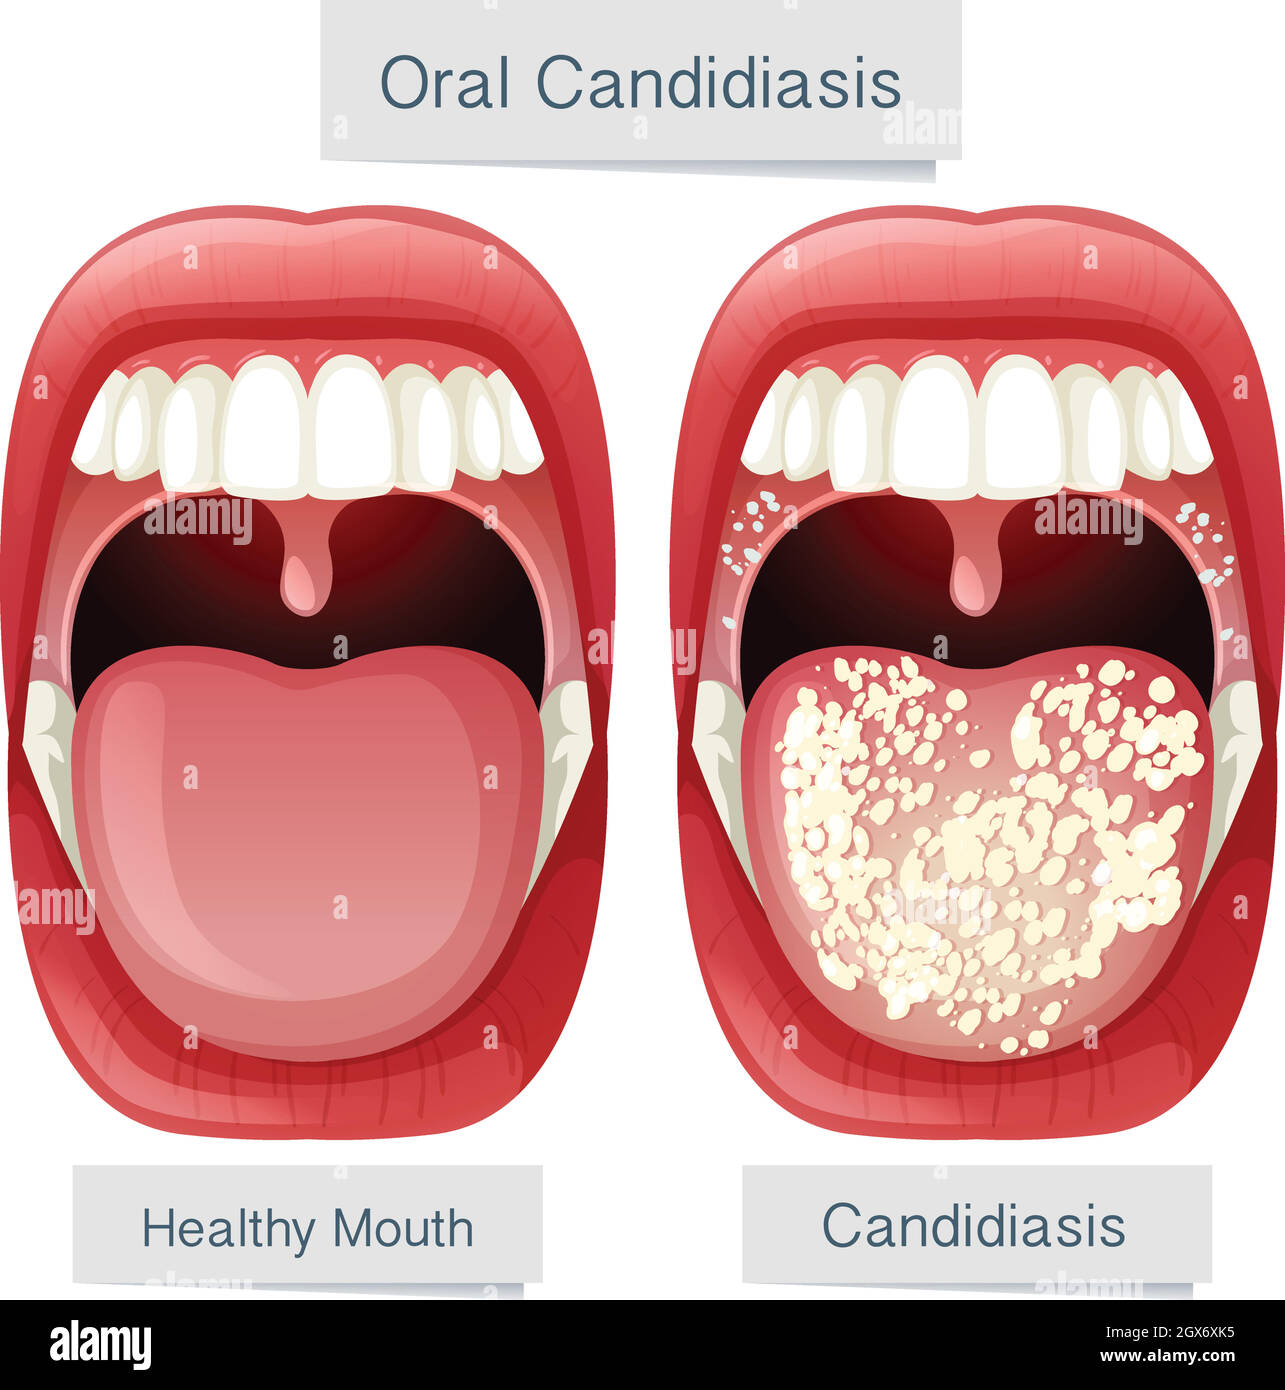 Anatomia della bocca umana Candidiasi orale Illustrazione Vettoriale